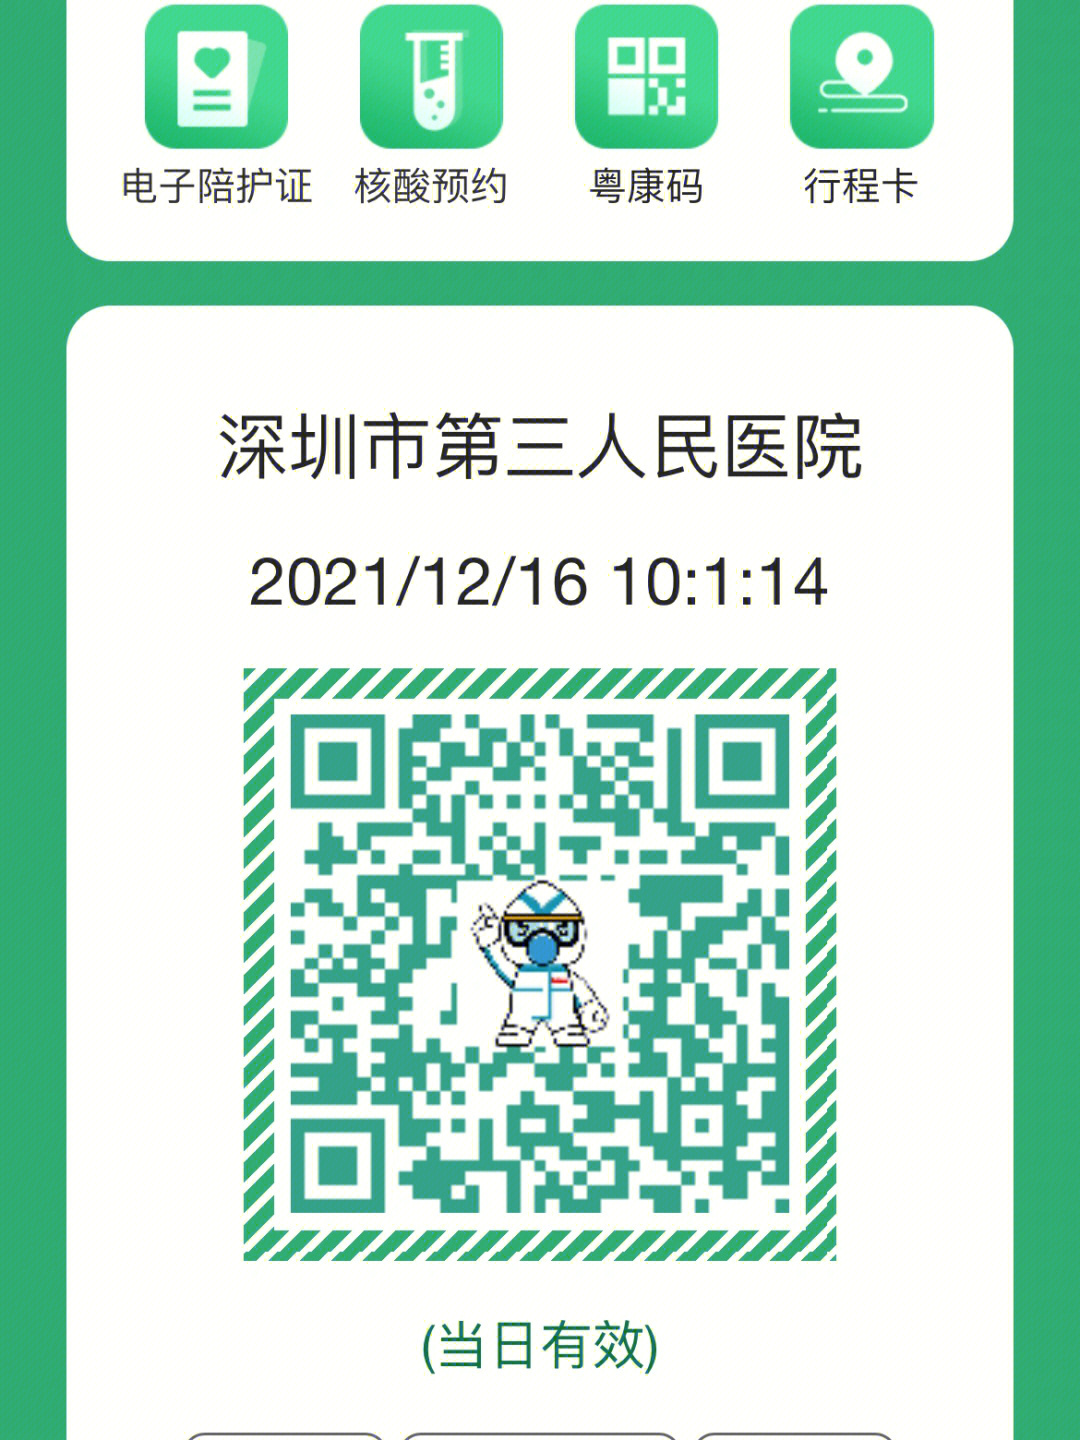 身份证,粤康码,行程码首先在微信搜索深圳市第三人民医院